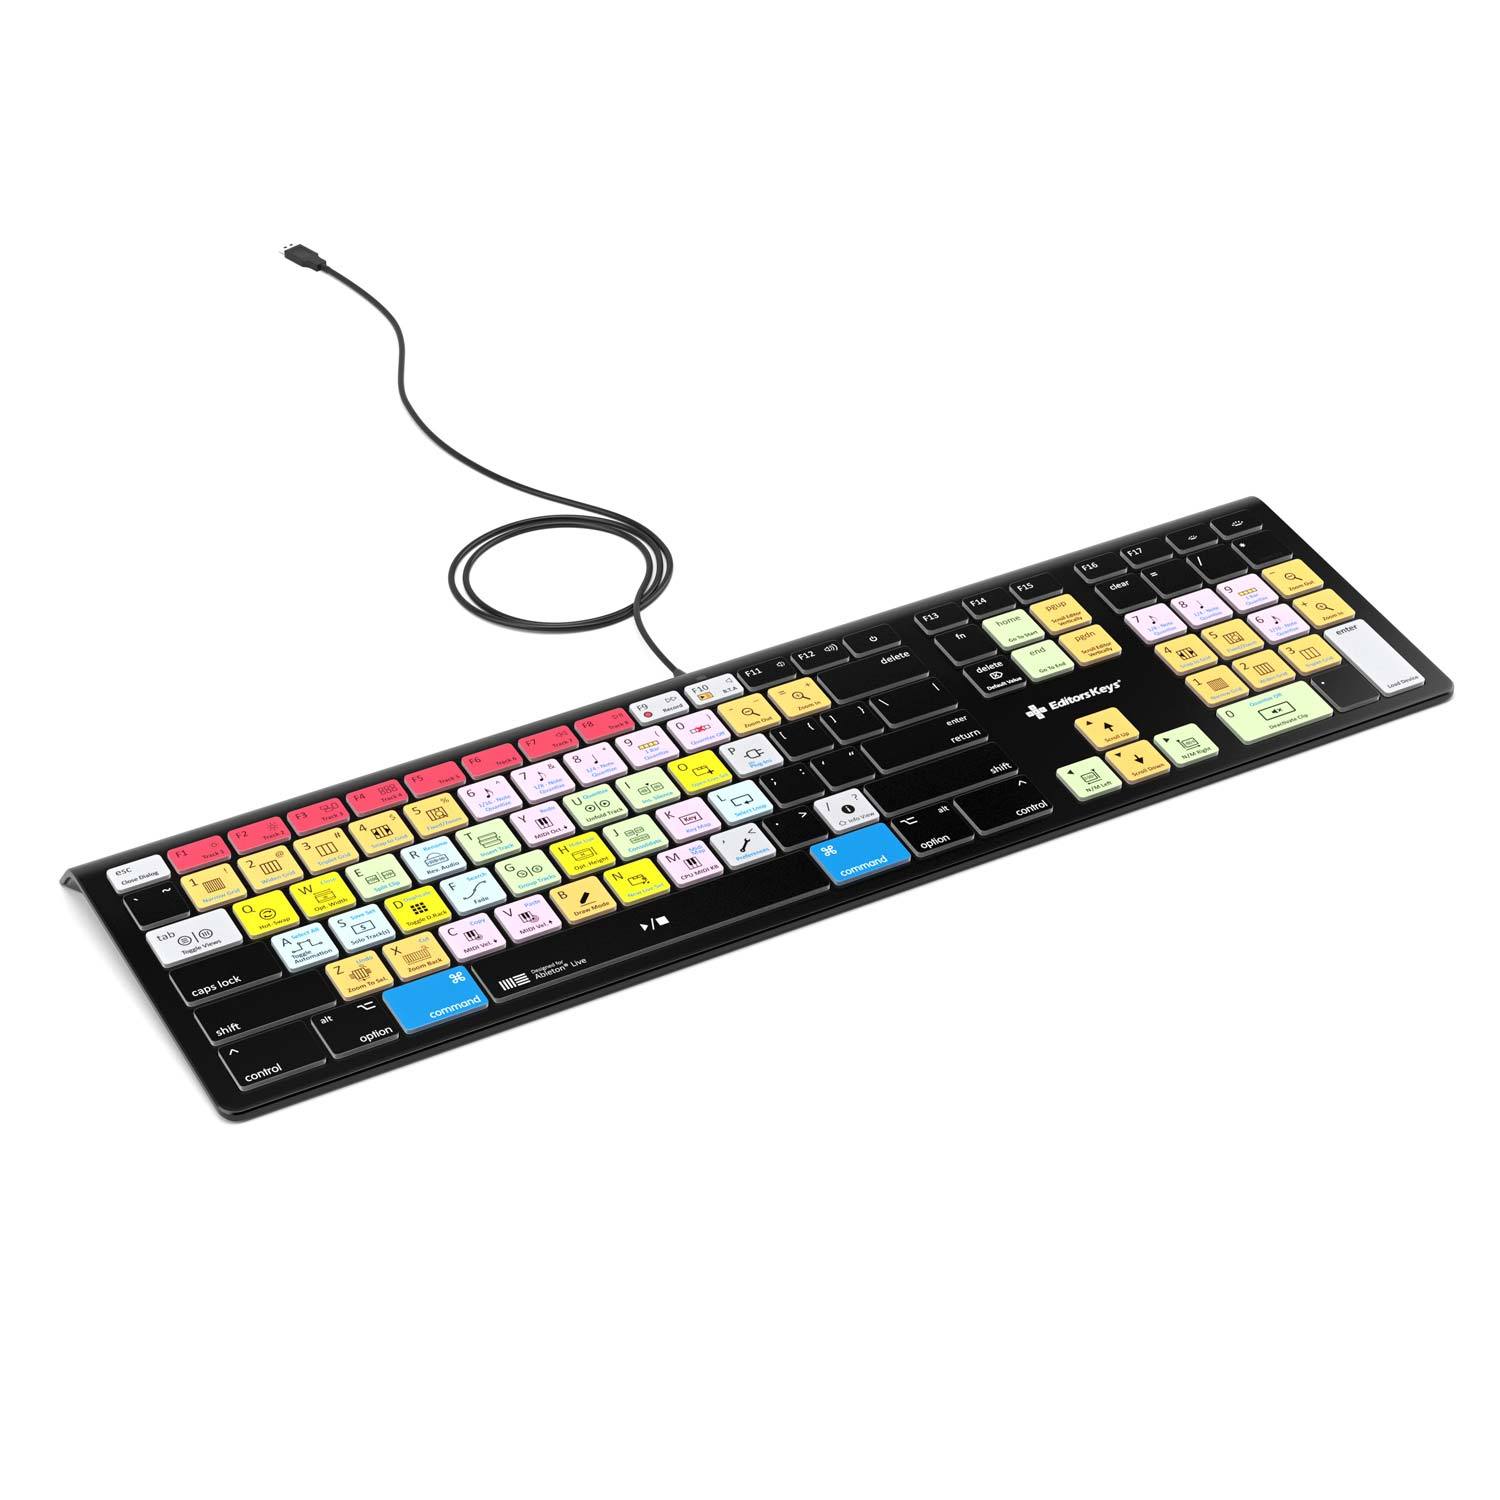 Ableton Live Keyboard - Backlit - For Mac or PC - Editors Keys